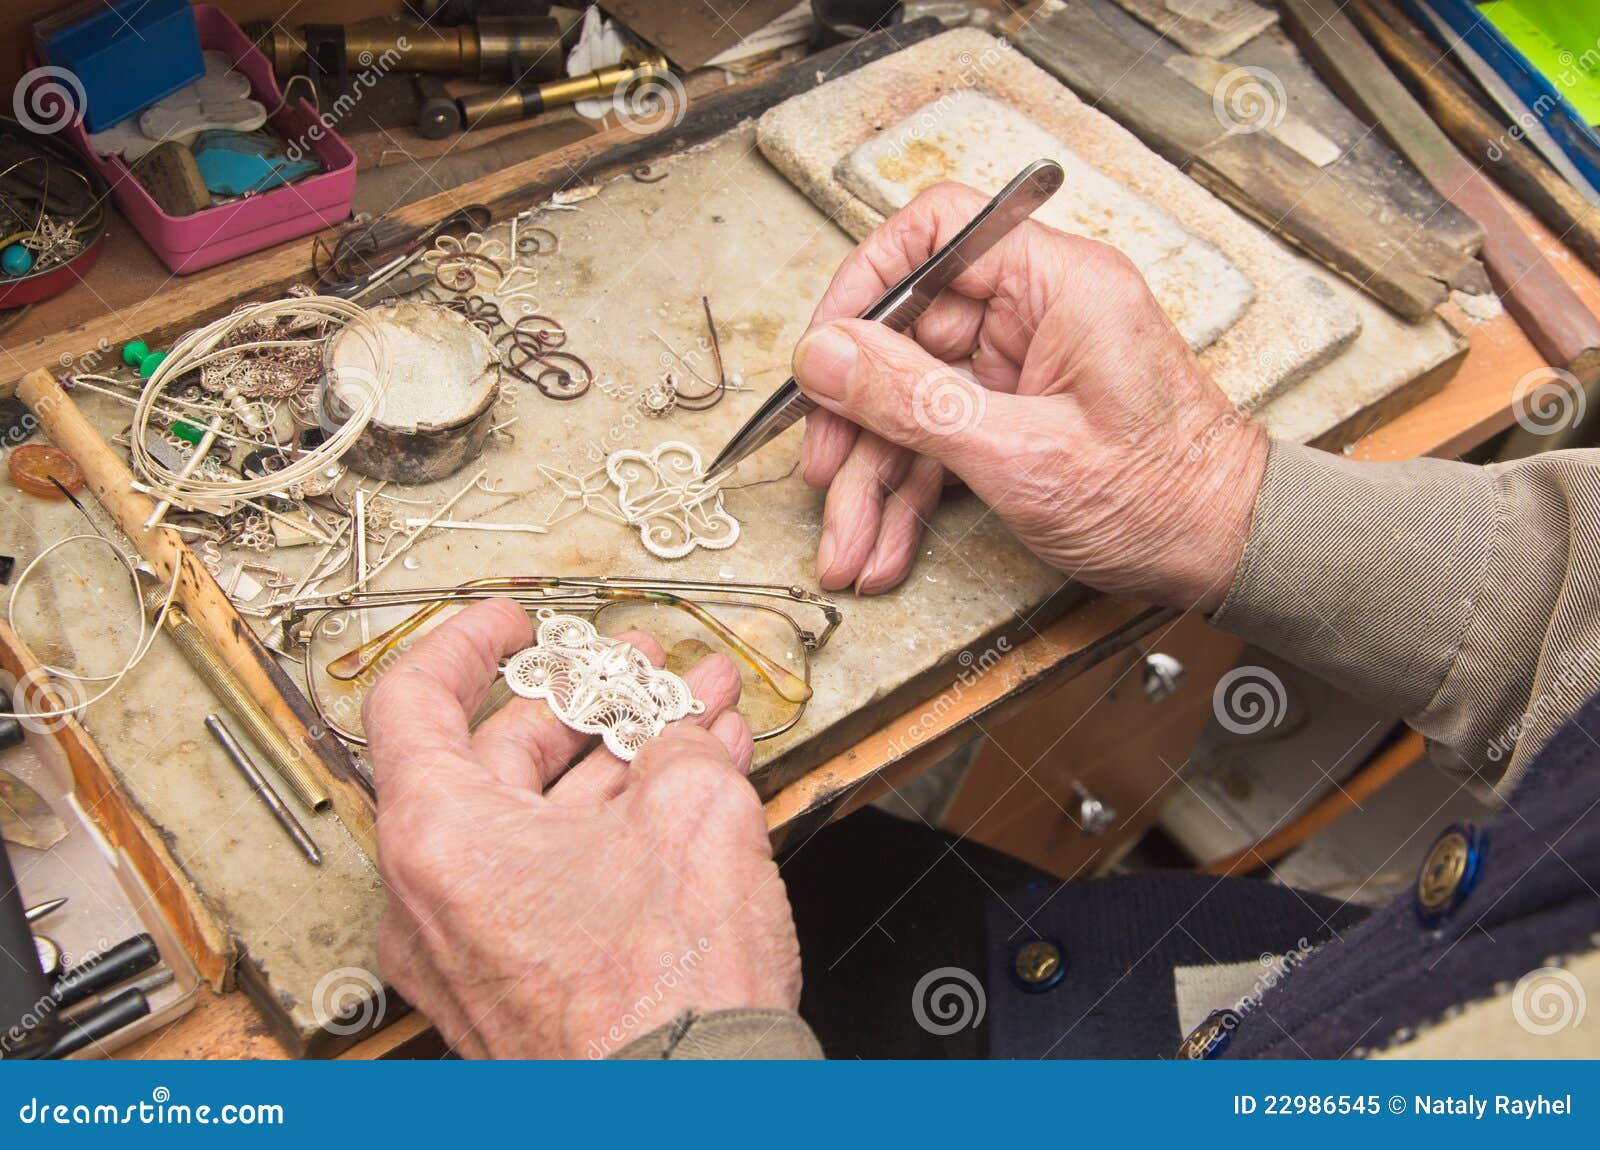 hands of jeweller